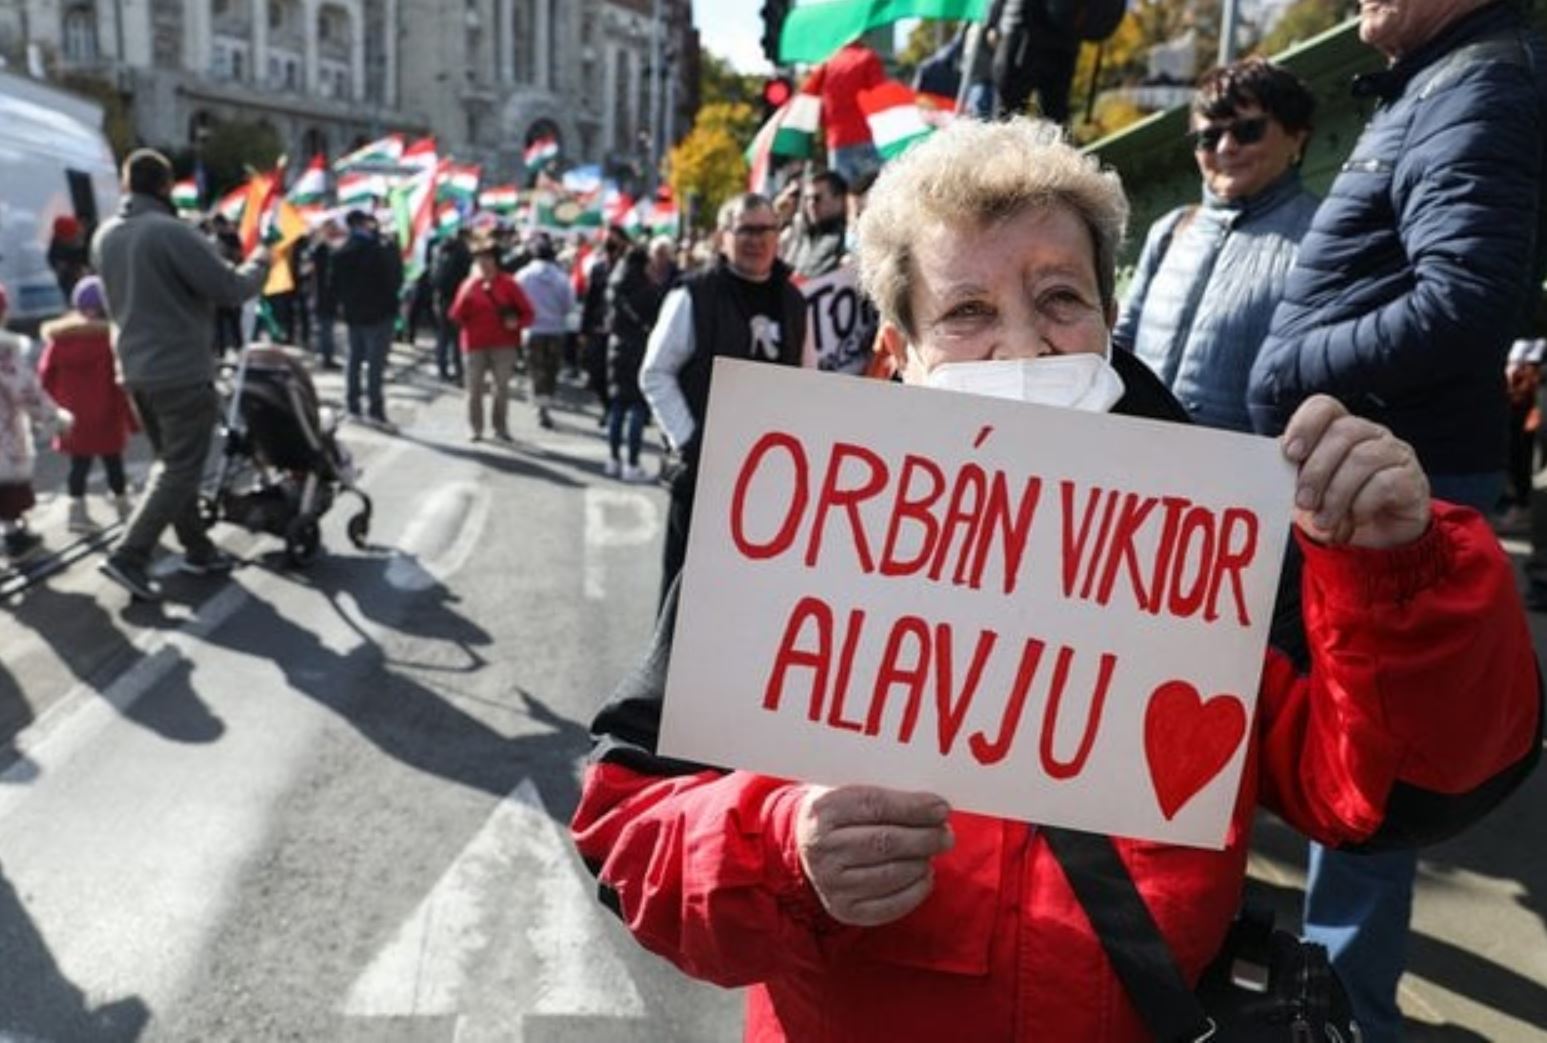 Orbán Viktor alavju